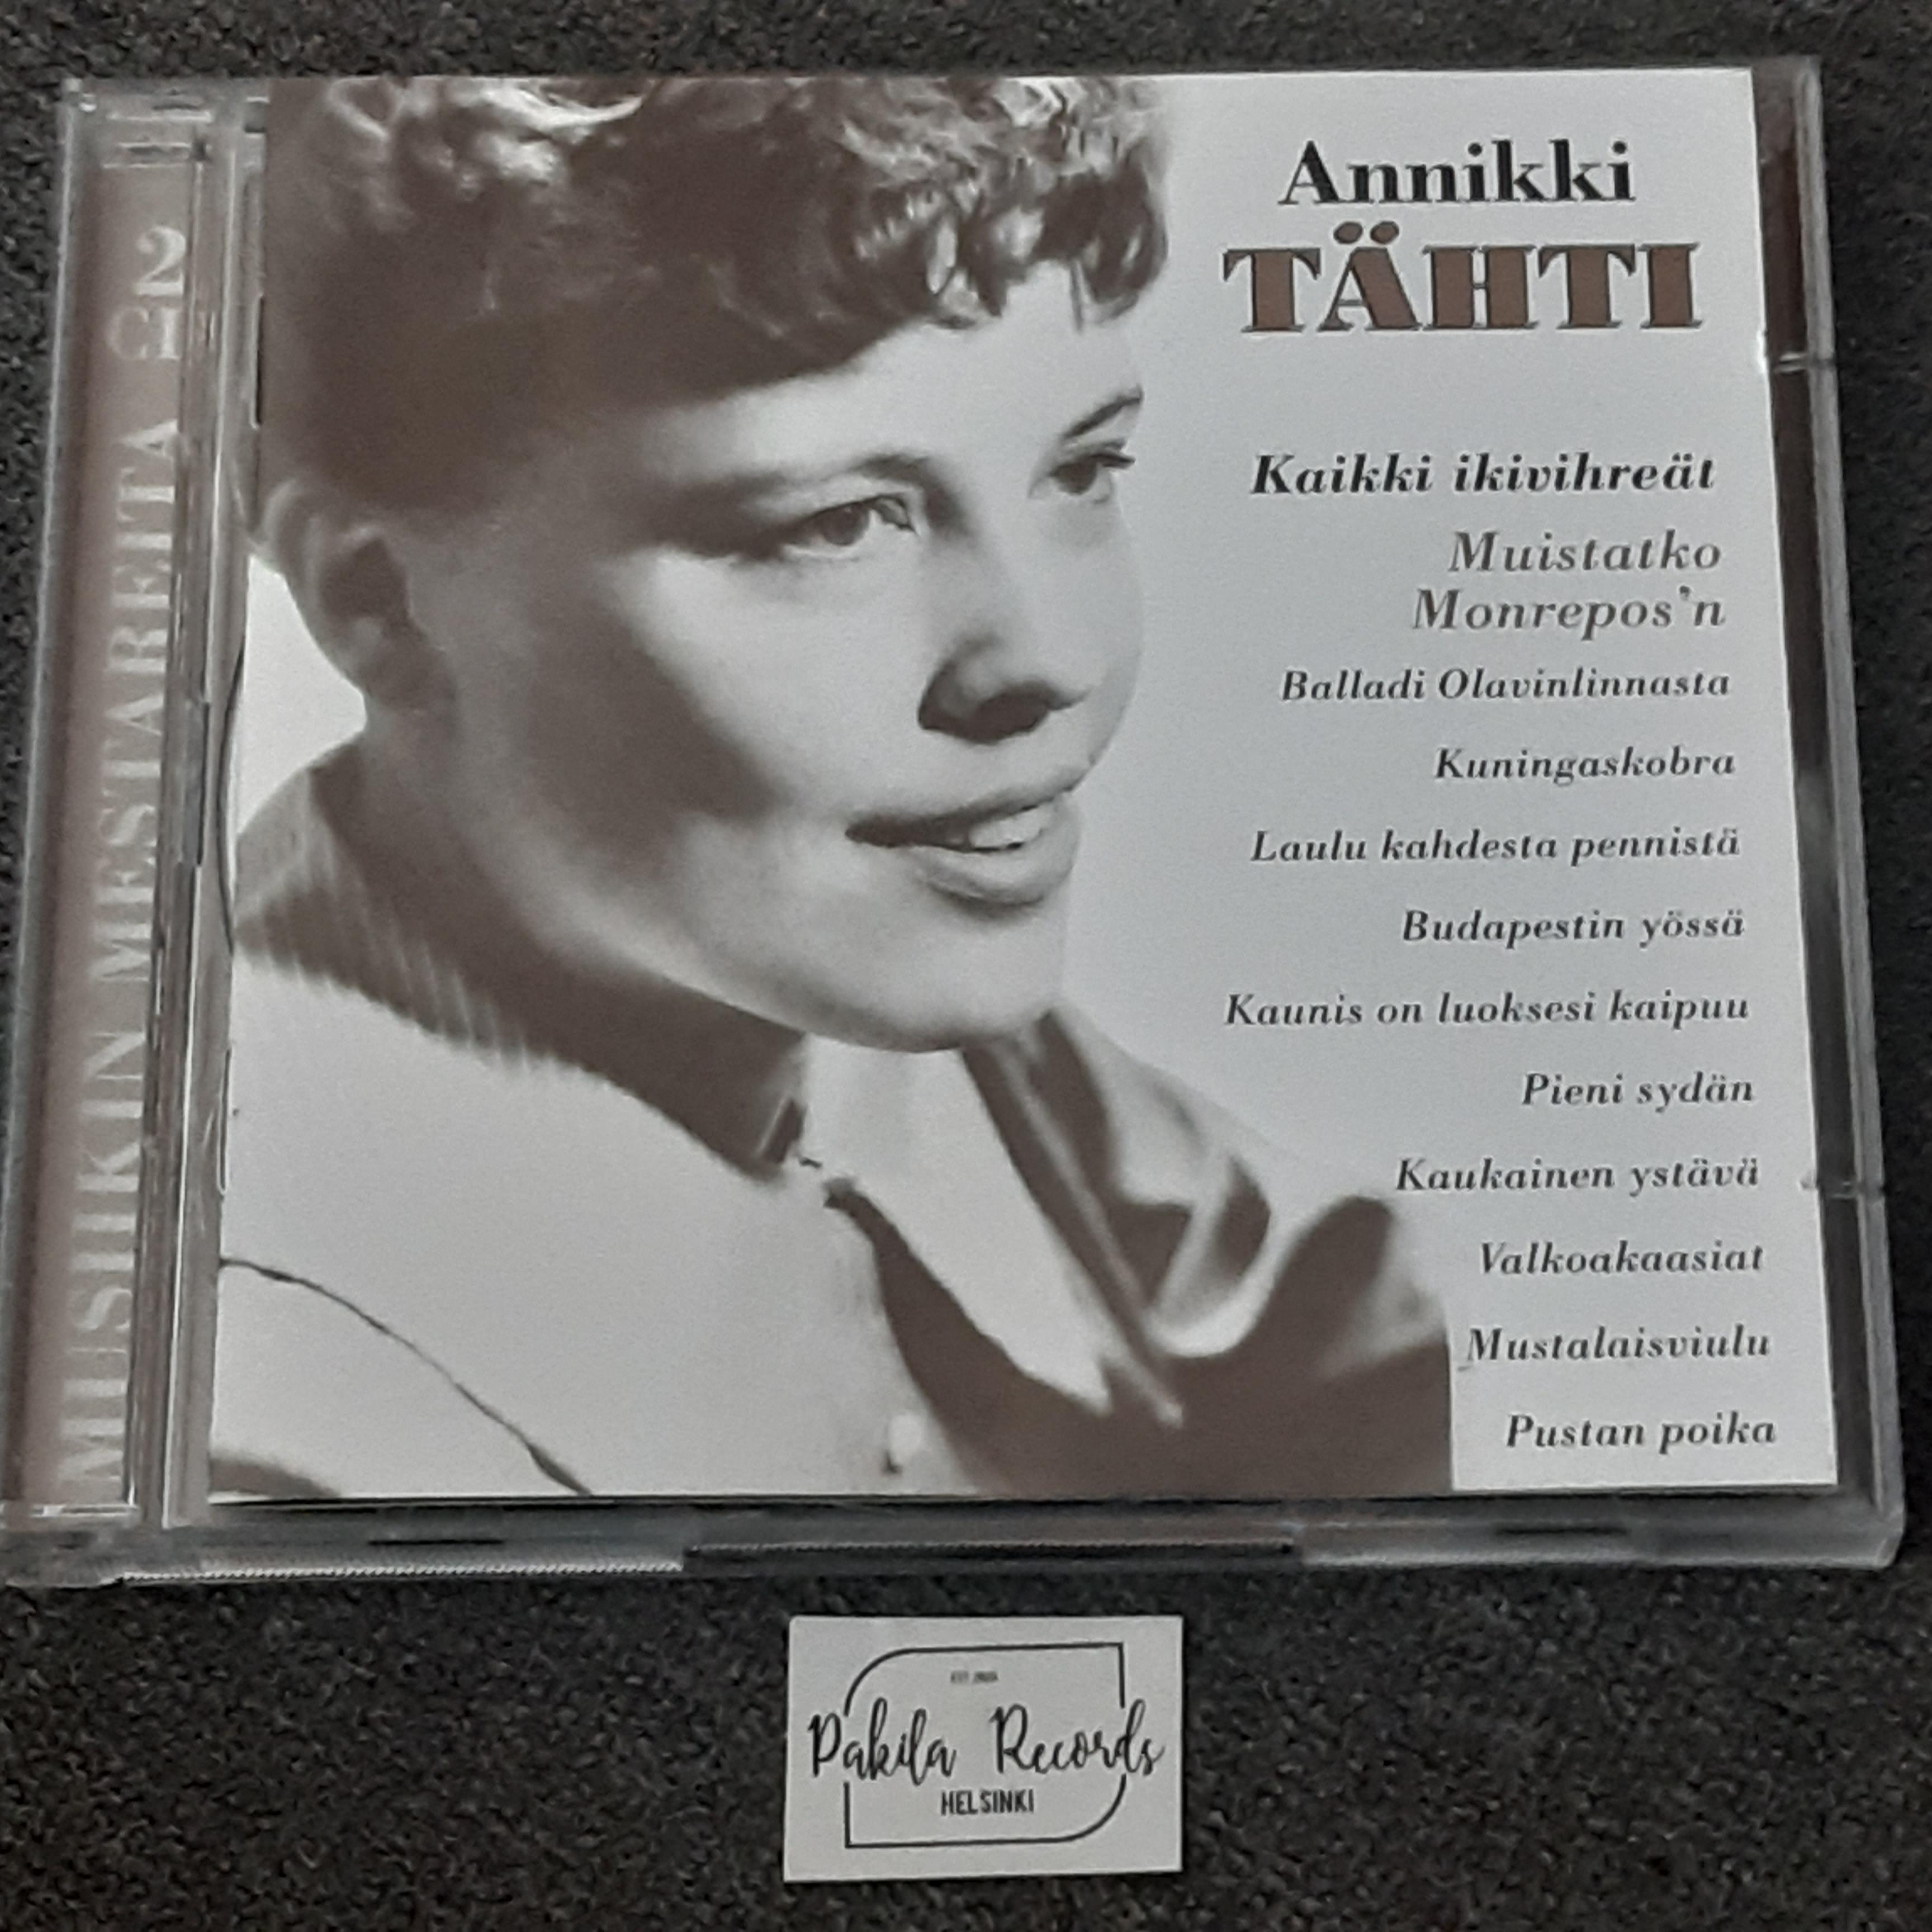 Annikki Tähti - Kaikki ikivihreät - 2 CD (käytetty)